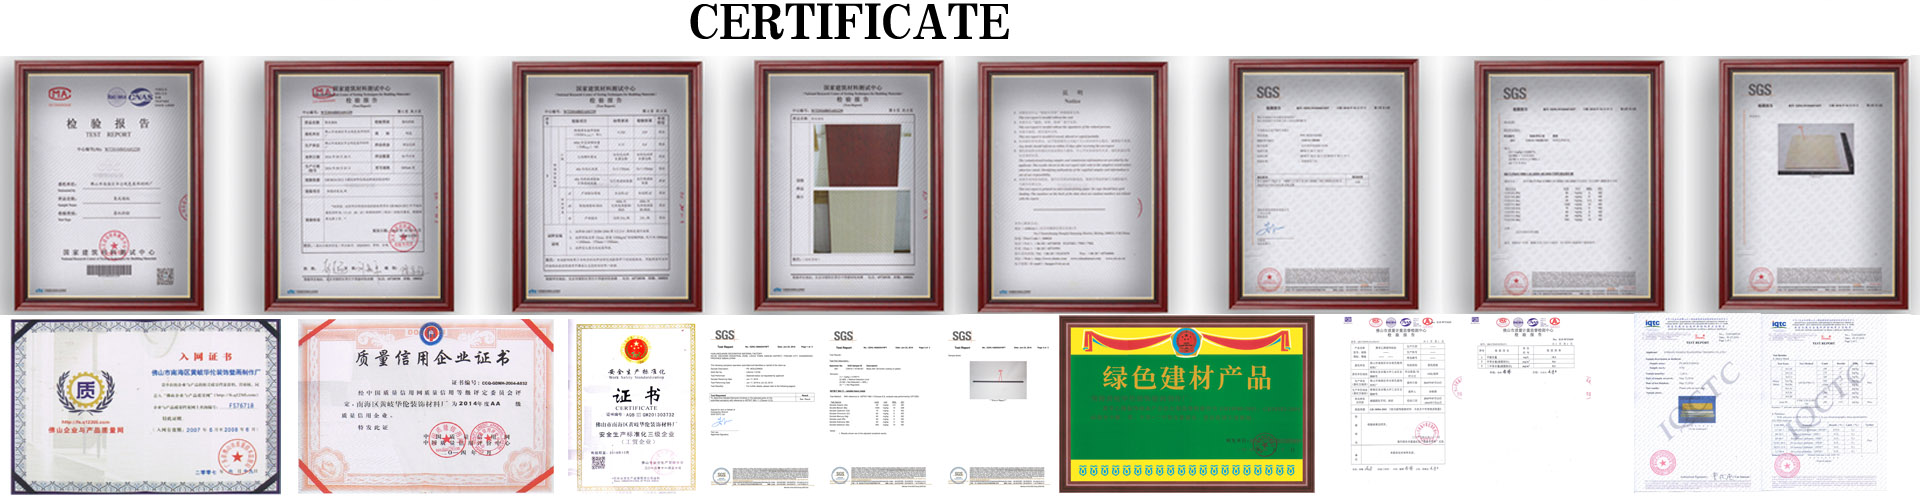 Hualun Guanse Factory Certificate